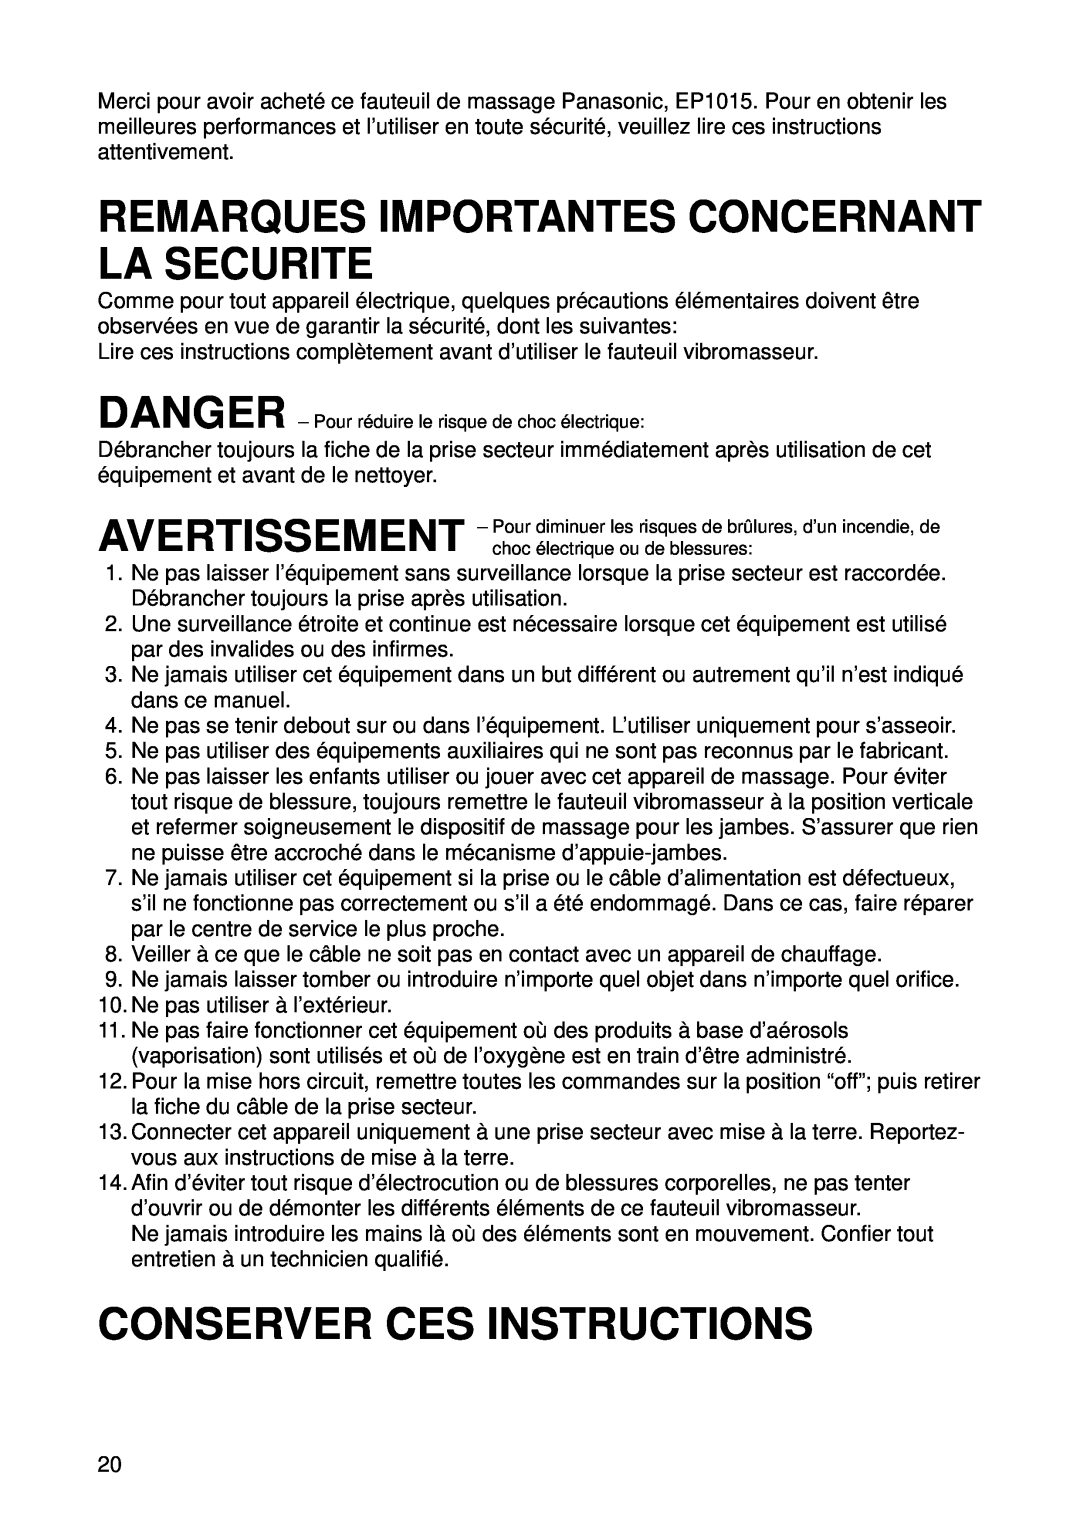 Panasonic EP1015 manuel dutilisation Remarques Importantes Concernant La Securite, Conserver Ces Instructions 